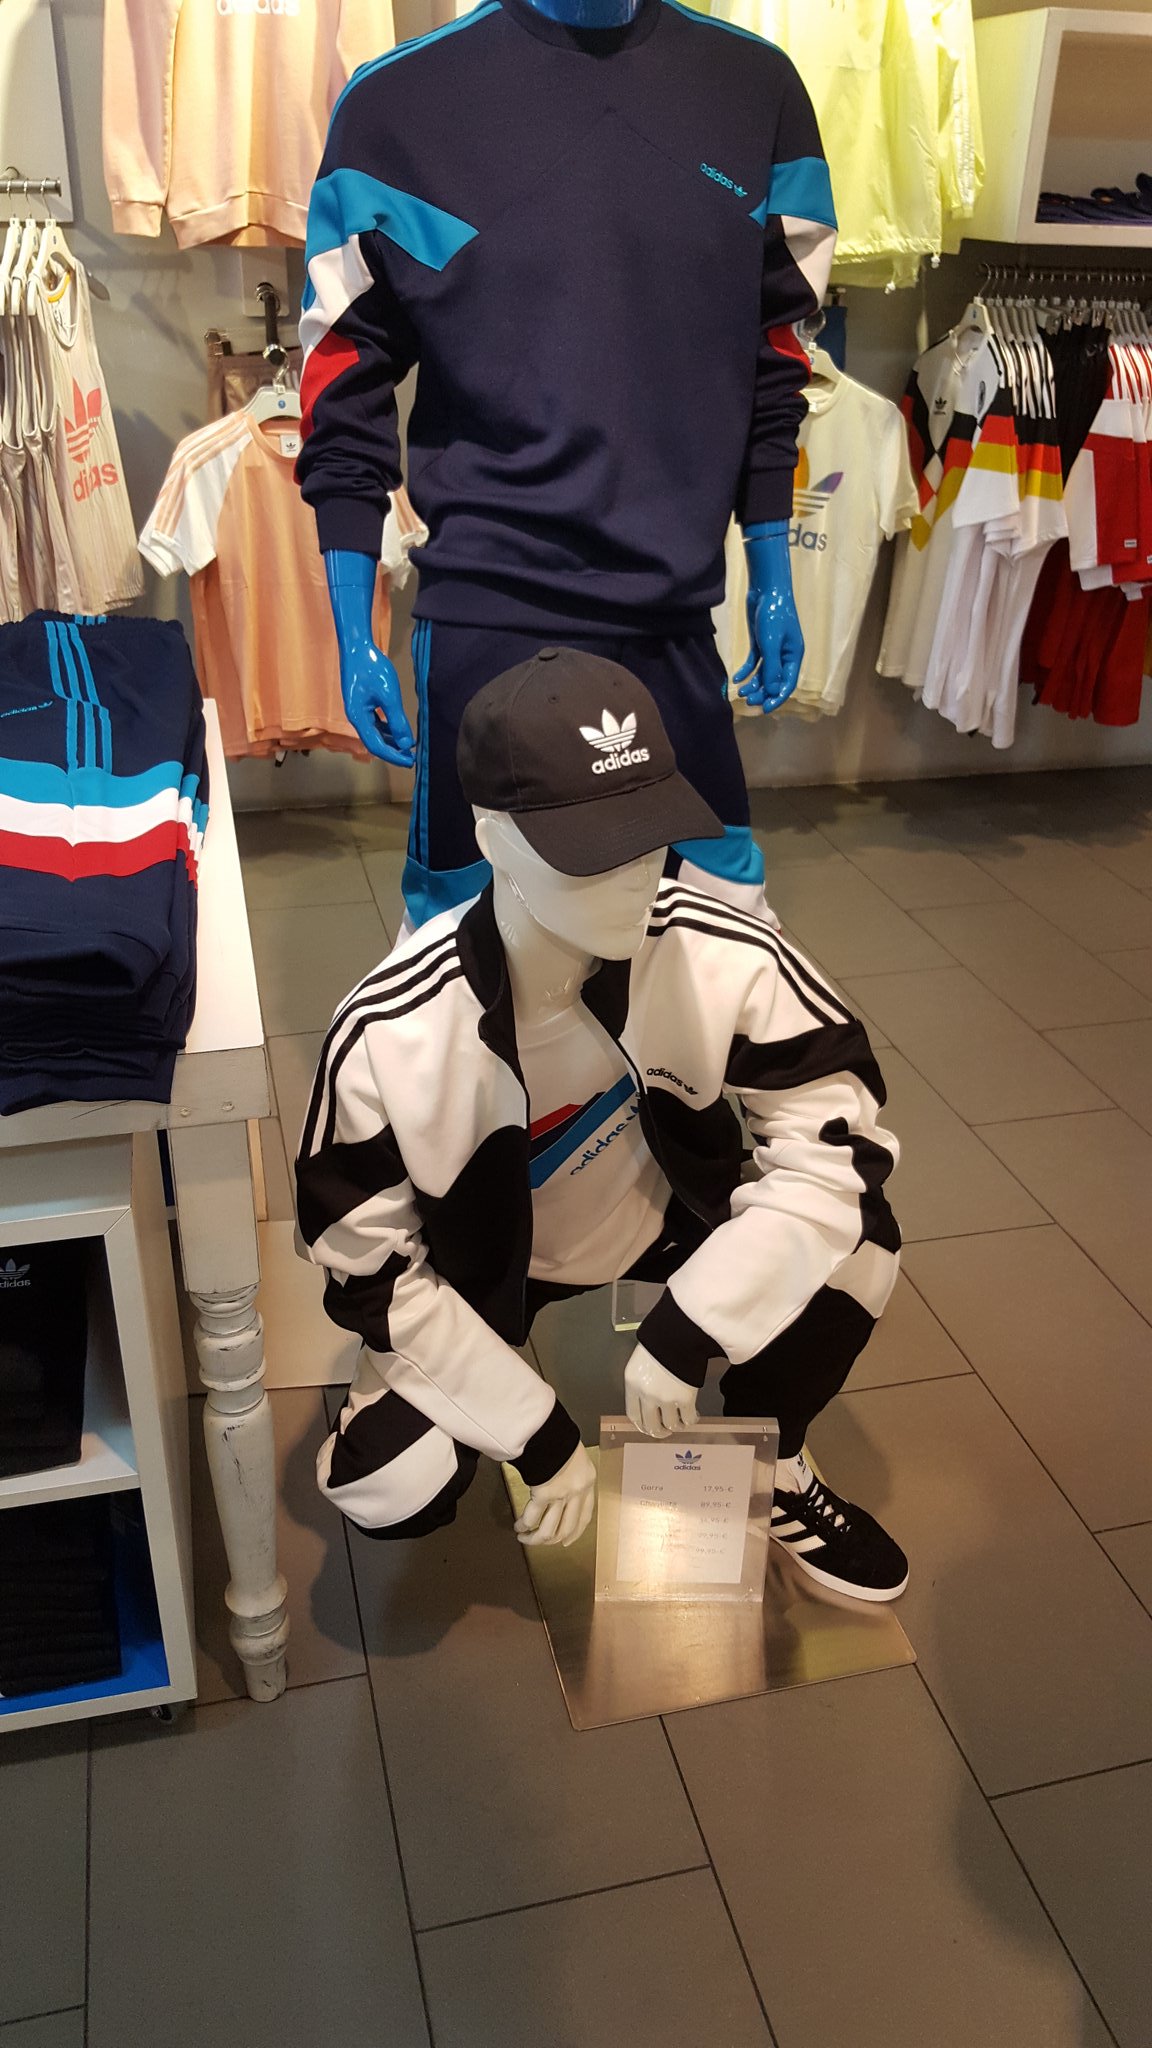 Ineficiente Evaluable búnker anthony on Twitter: "Madrid Adidas store: squatting mannequins 😂  https://t.co/jkv8BjbxNM" / Twitter